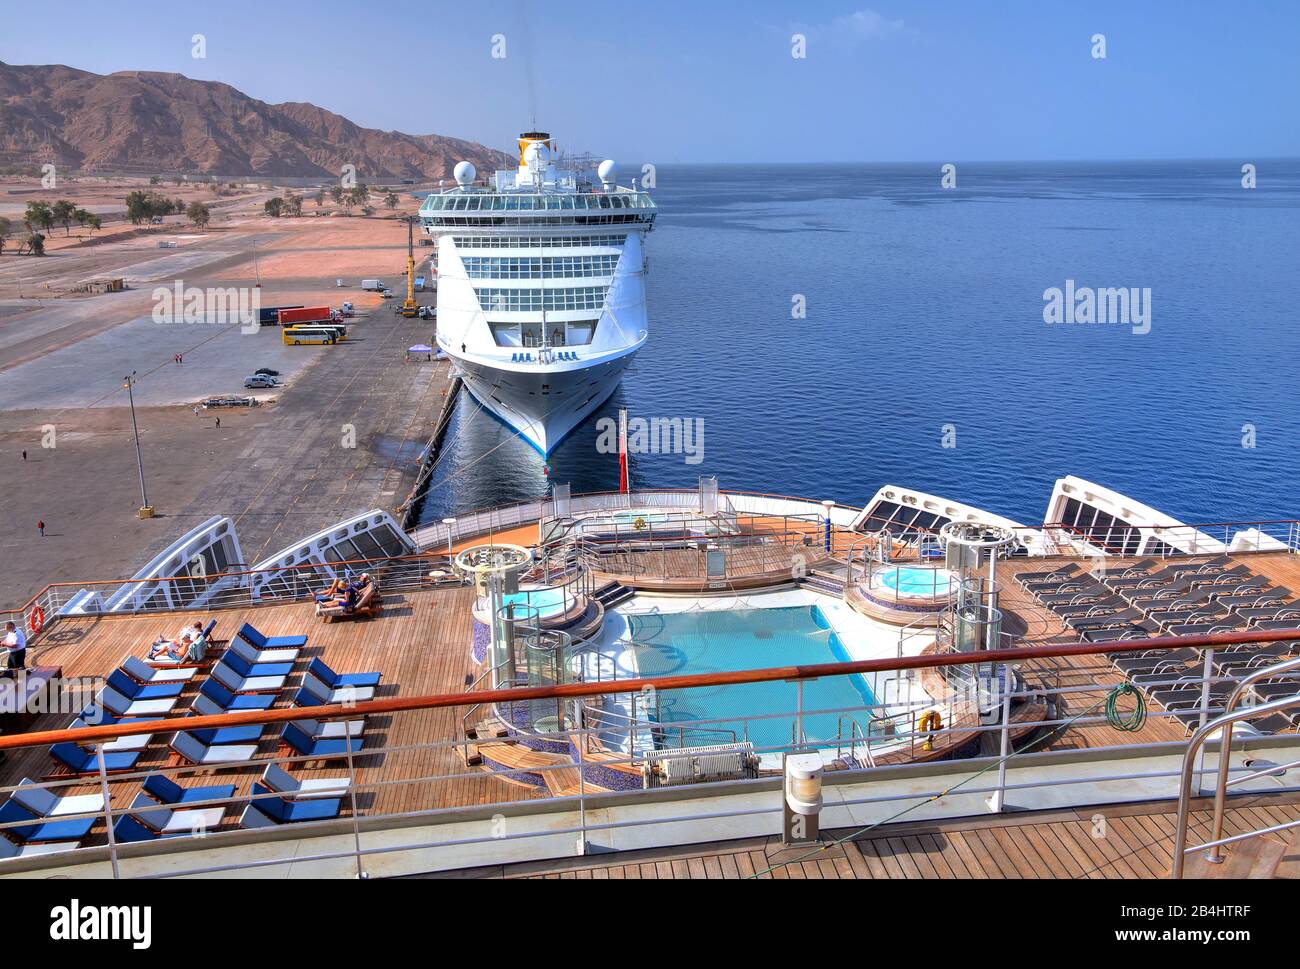 Cruceros Costa Victoria y Queen Mary 2 (después de la cubierta) en el puerto Akaba Aqaba, Golfo de Aqaba, Mar Rojo, Jordania Foto de stock